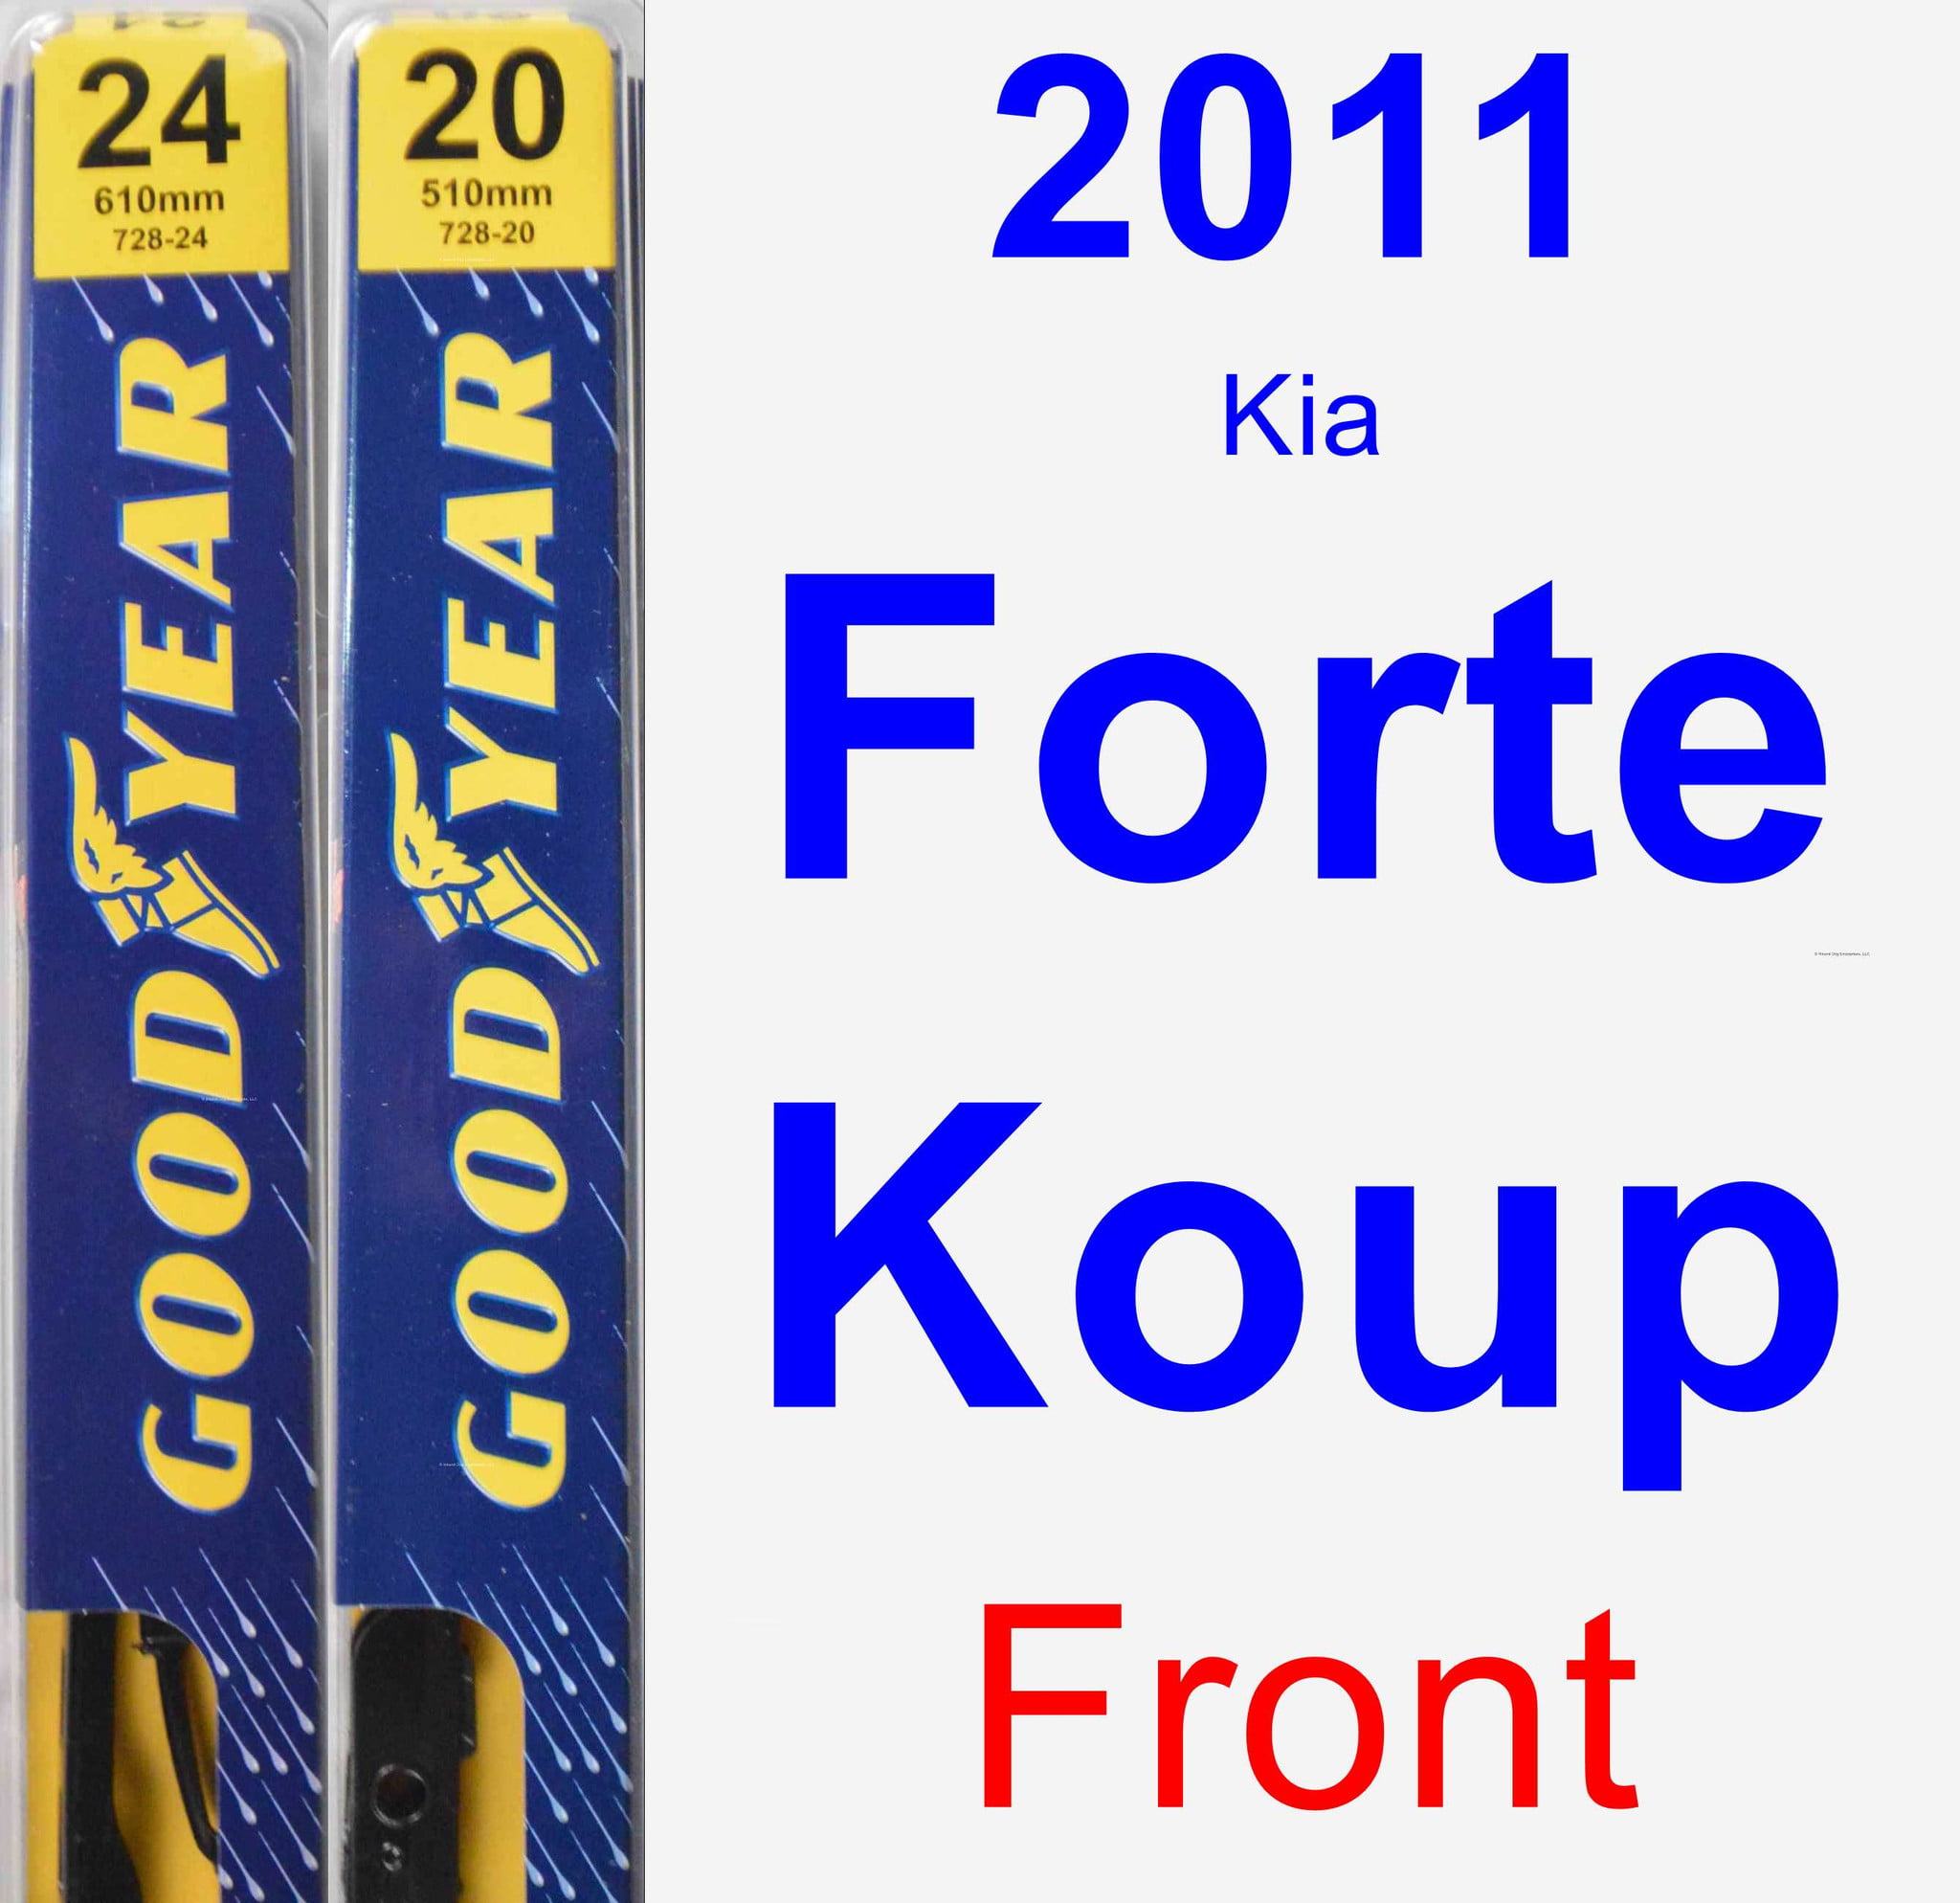 2011 Kia Forte Koup Wiper Blade Set/Kit (Front) (2 Blades) - Premium - Walmart.com - Walmart.com 2011 Kia Forte Koup Wiper Blade Size